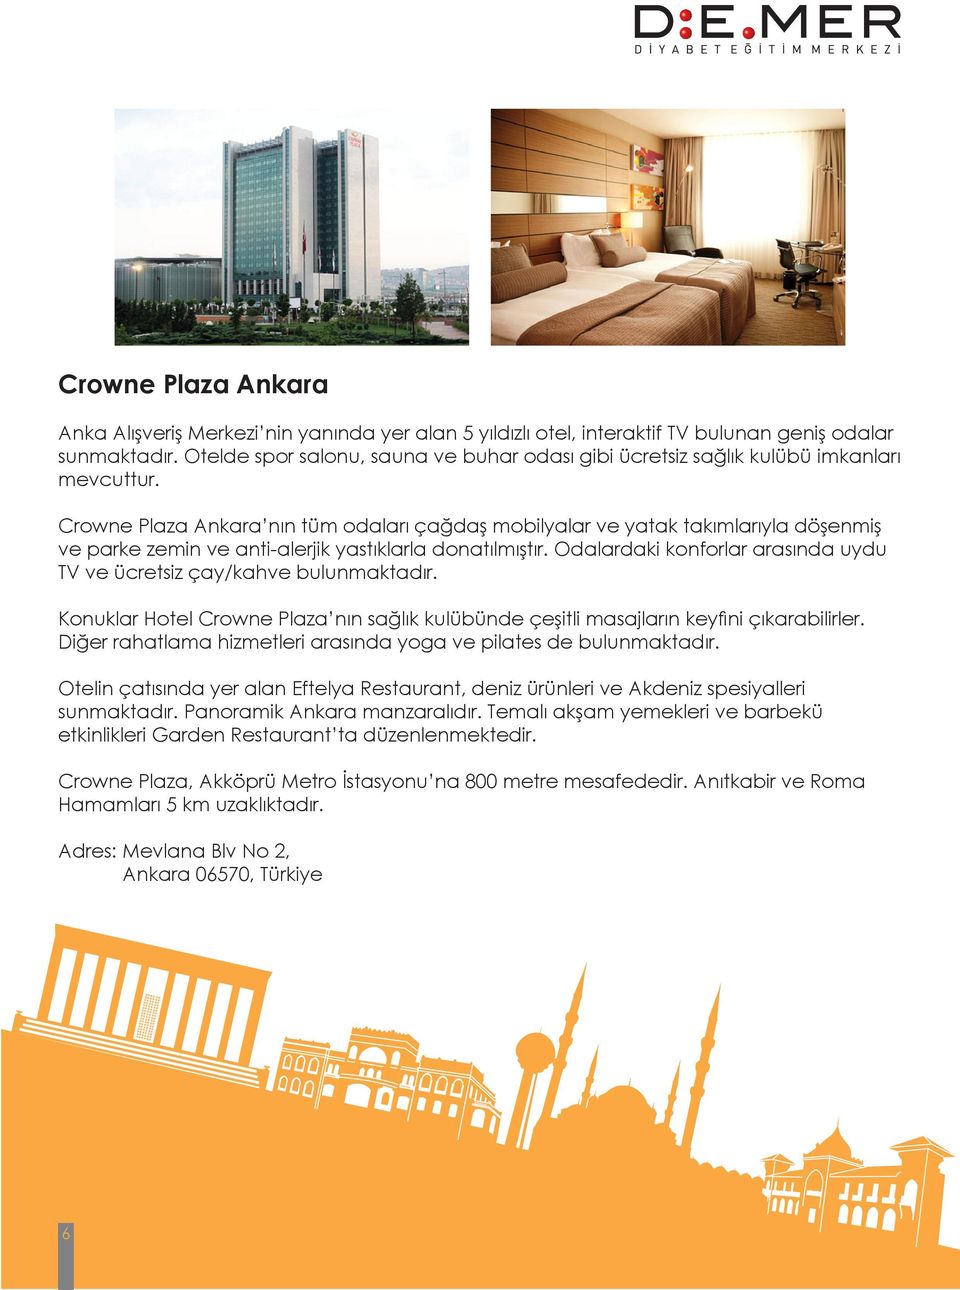 Crowne Plaza Ankara nın tüm odaları çağdaş mobilyalar ve yatak takımlarıyla döşenmiş ve parke zemin ve anti-alerjik yastıklarla donatılmıştır.